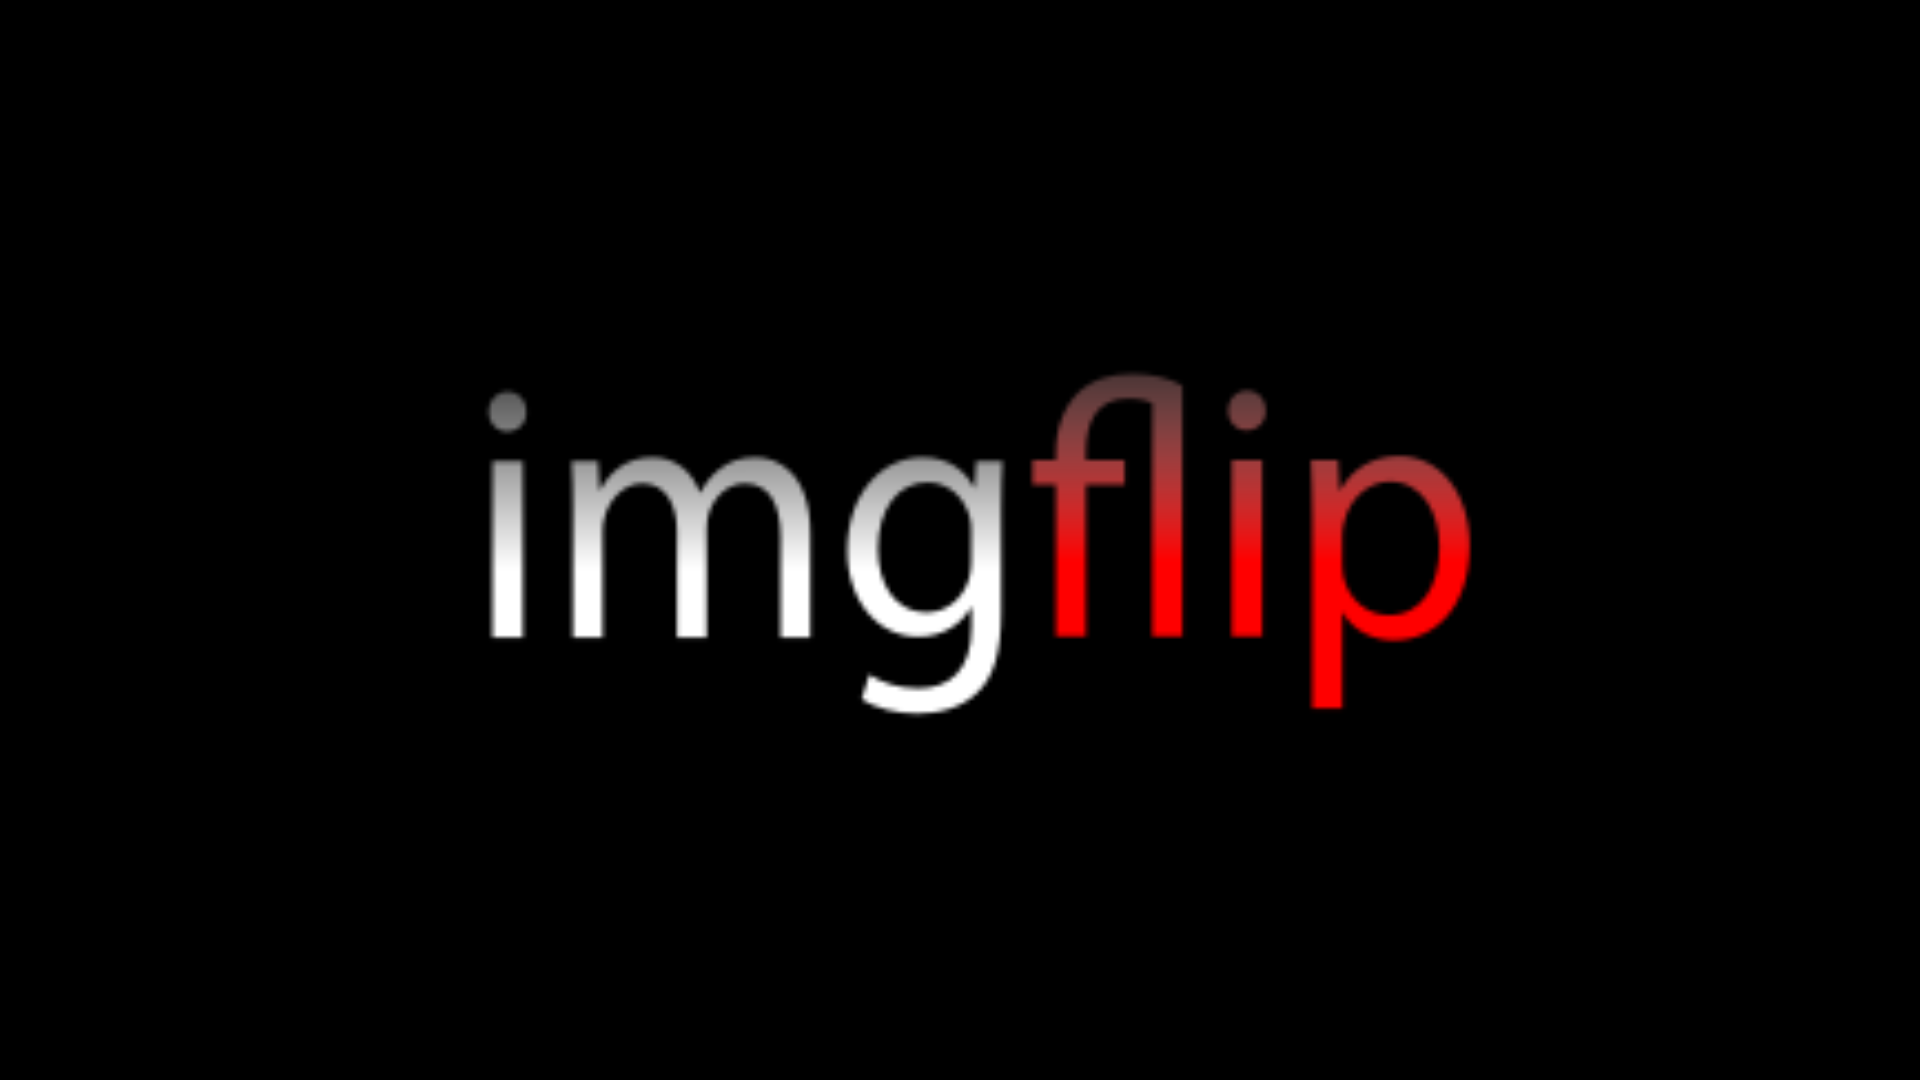 imgflip website logo